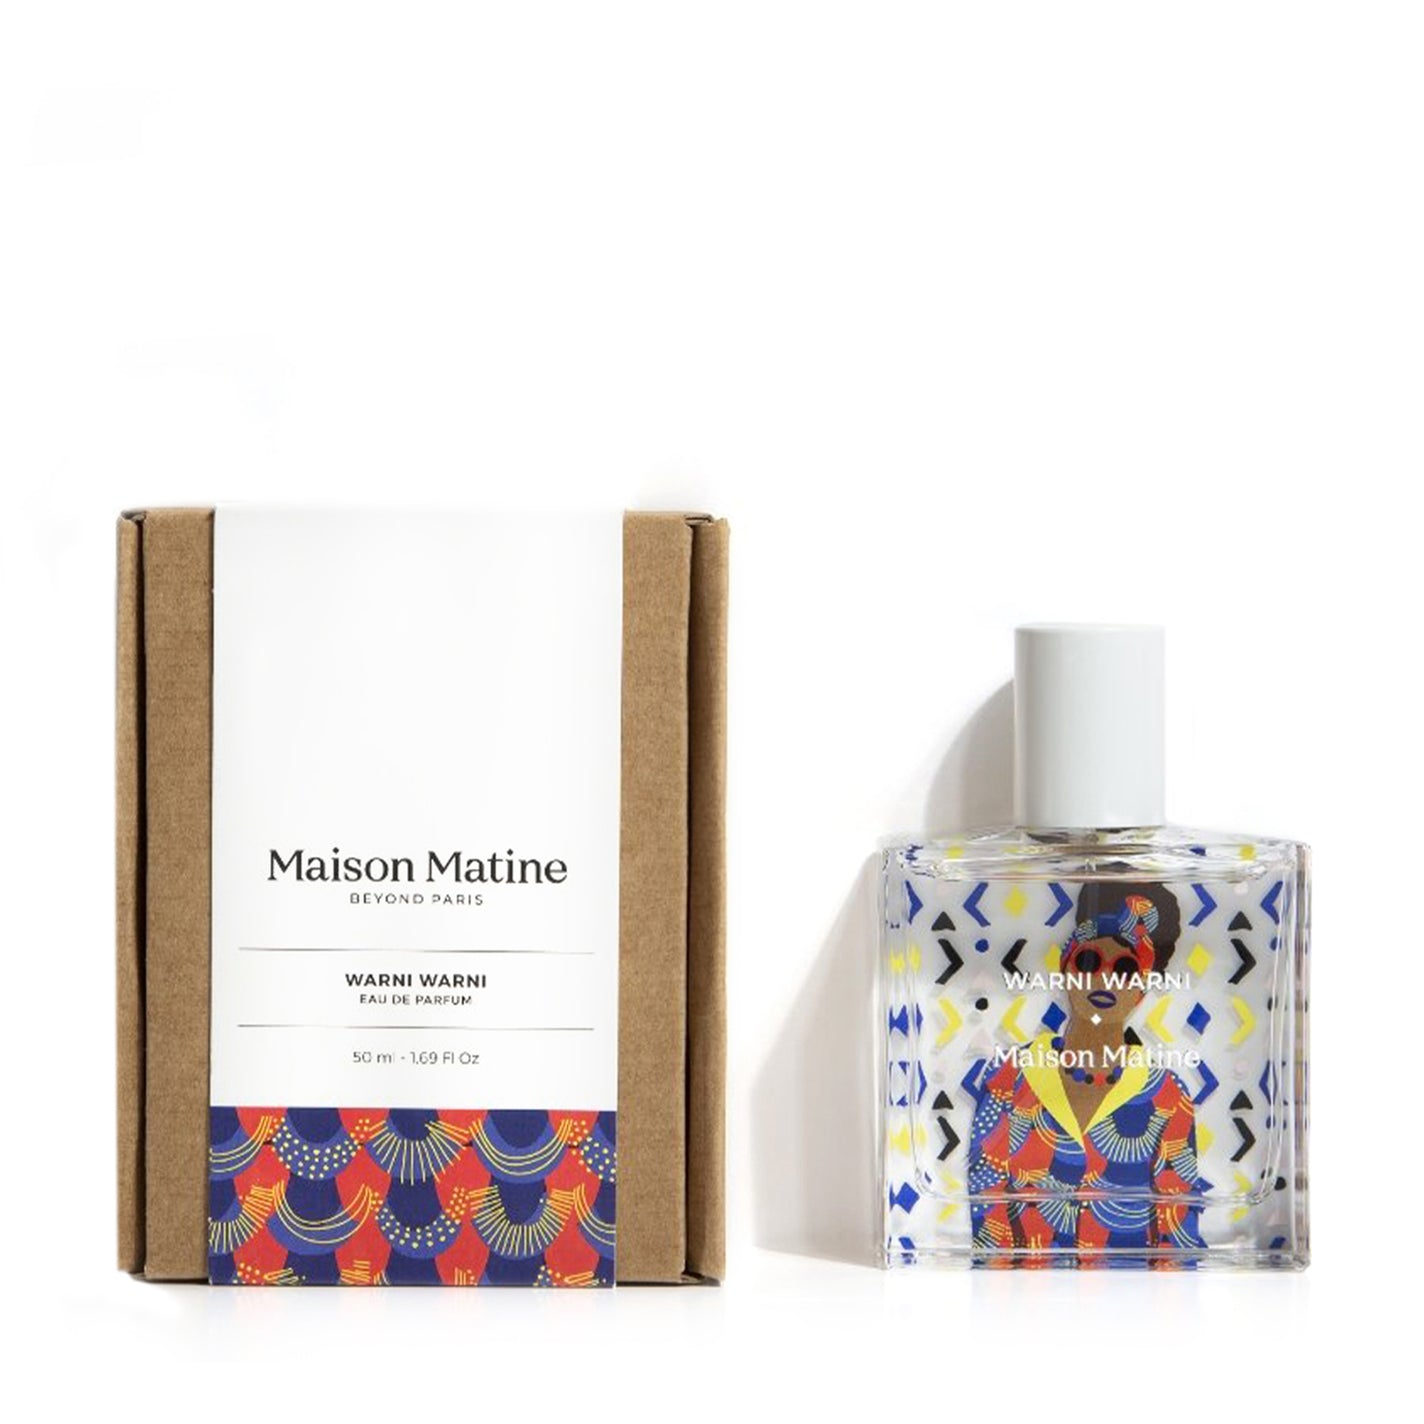 Maison Matine Warni Warni Eau de Parfum - 50ml